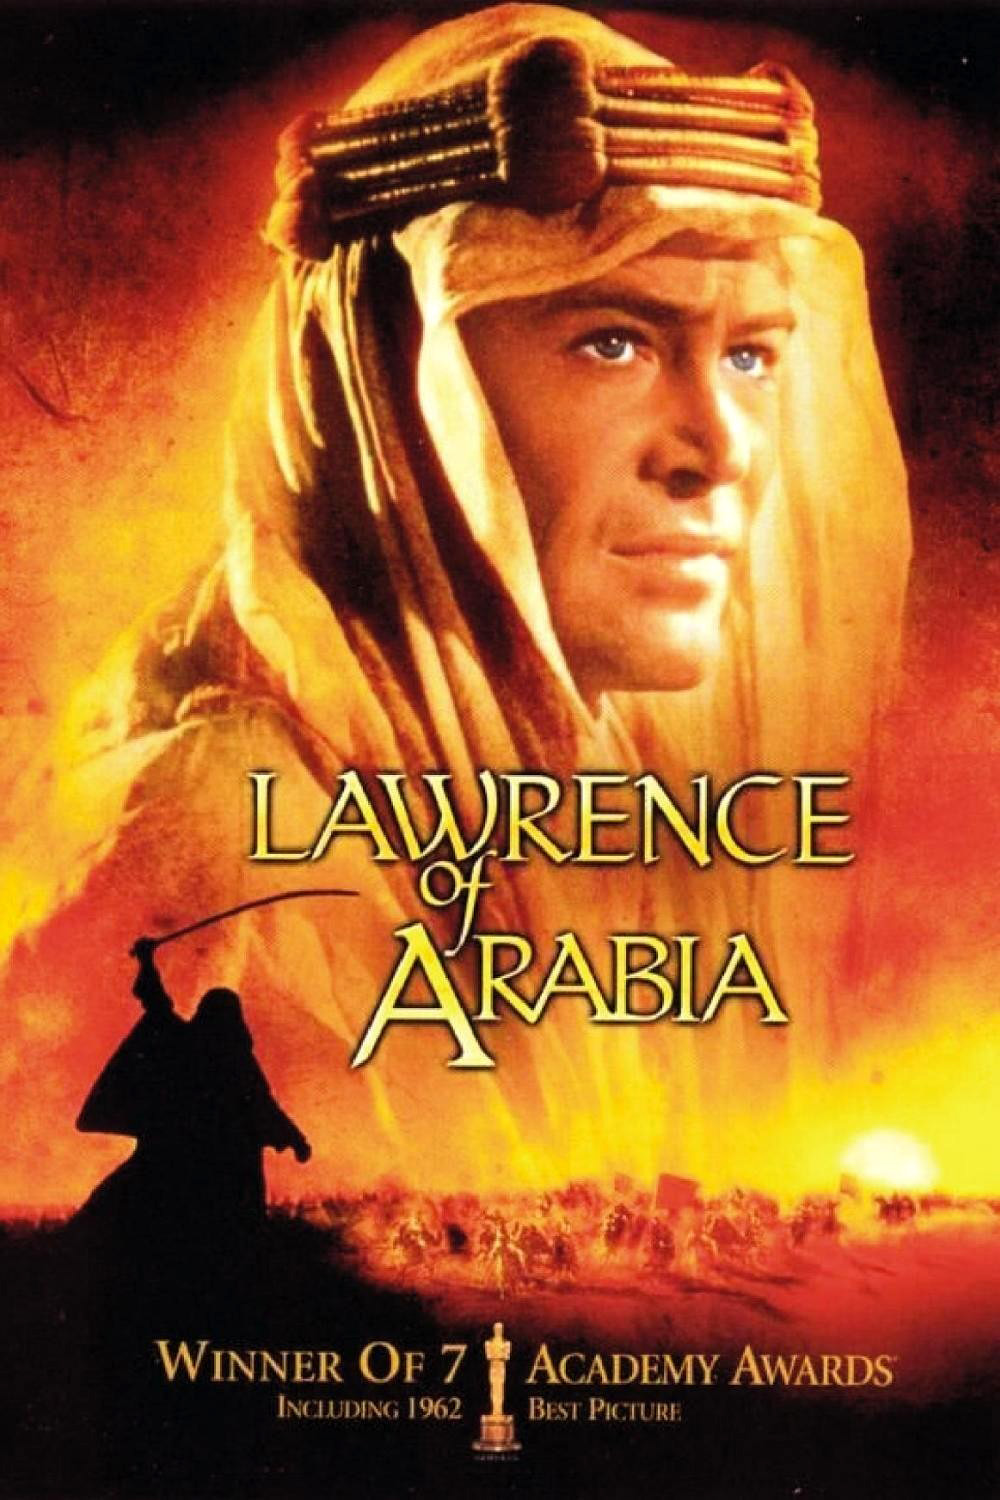 阿拉伯的劳伦斯/沙漠枭雄 Lawrence.of.Arabia.1962.DISC2.2160p.BluRay.HEVC.TrueHD.7.1.Atmos-CCCV1 49.53GB-1.jpeg